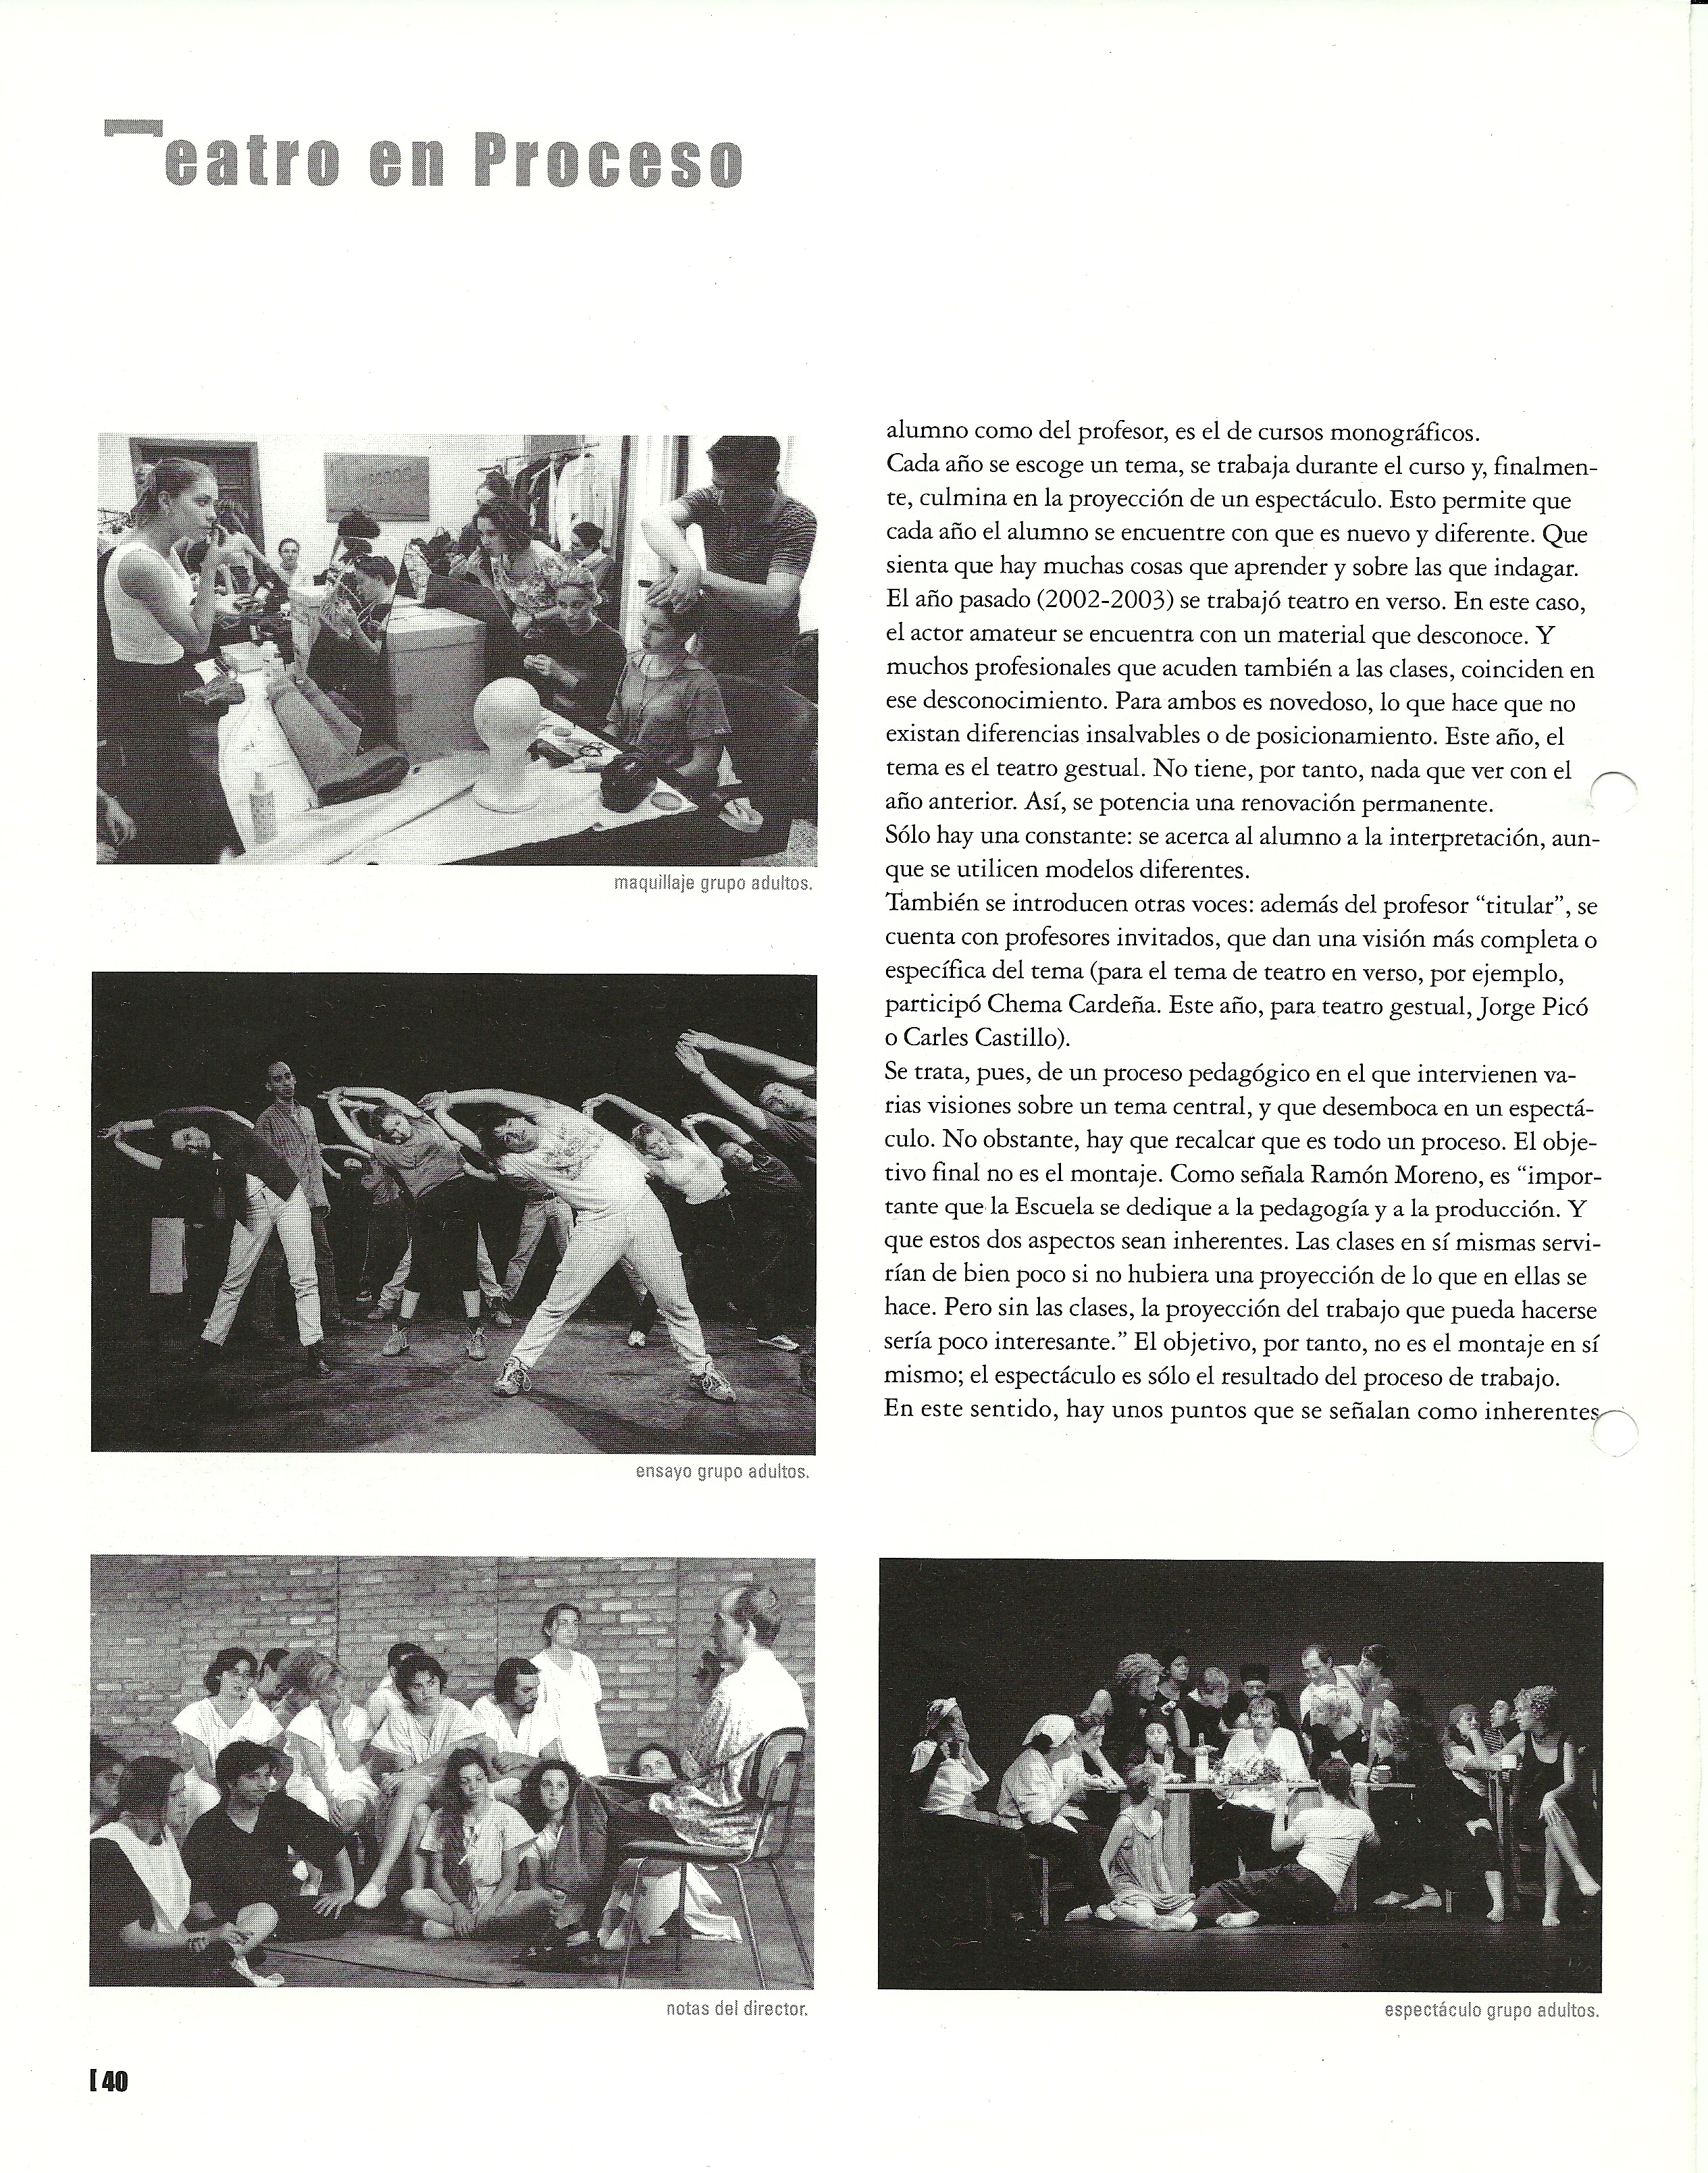 2004 Reportatge en Acotaciones nº 3